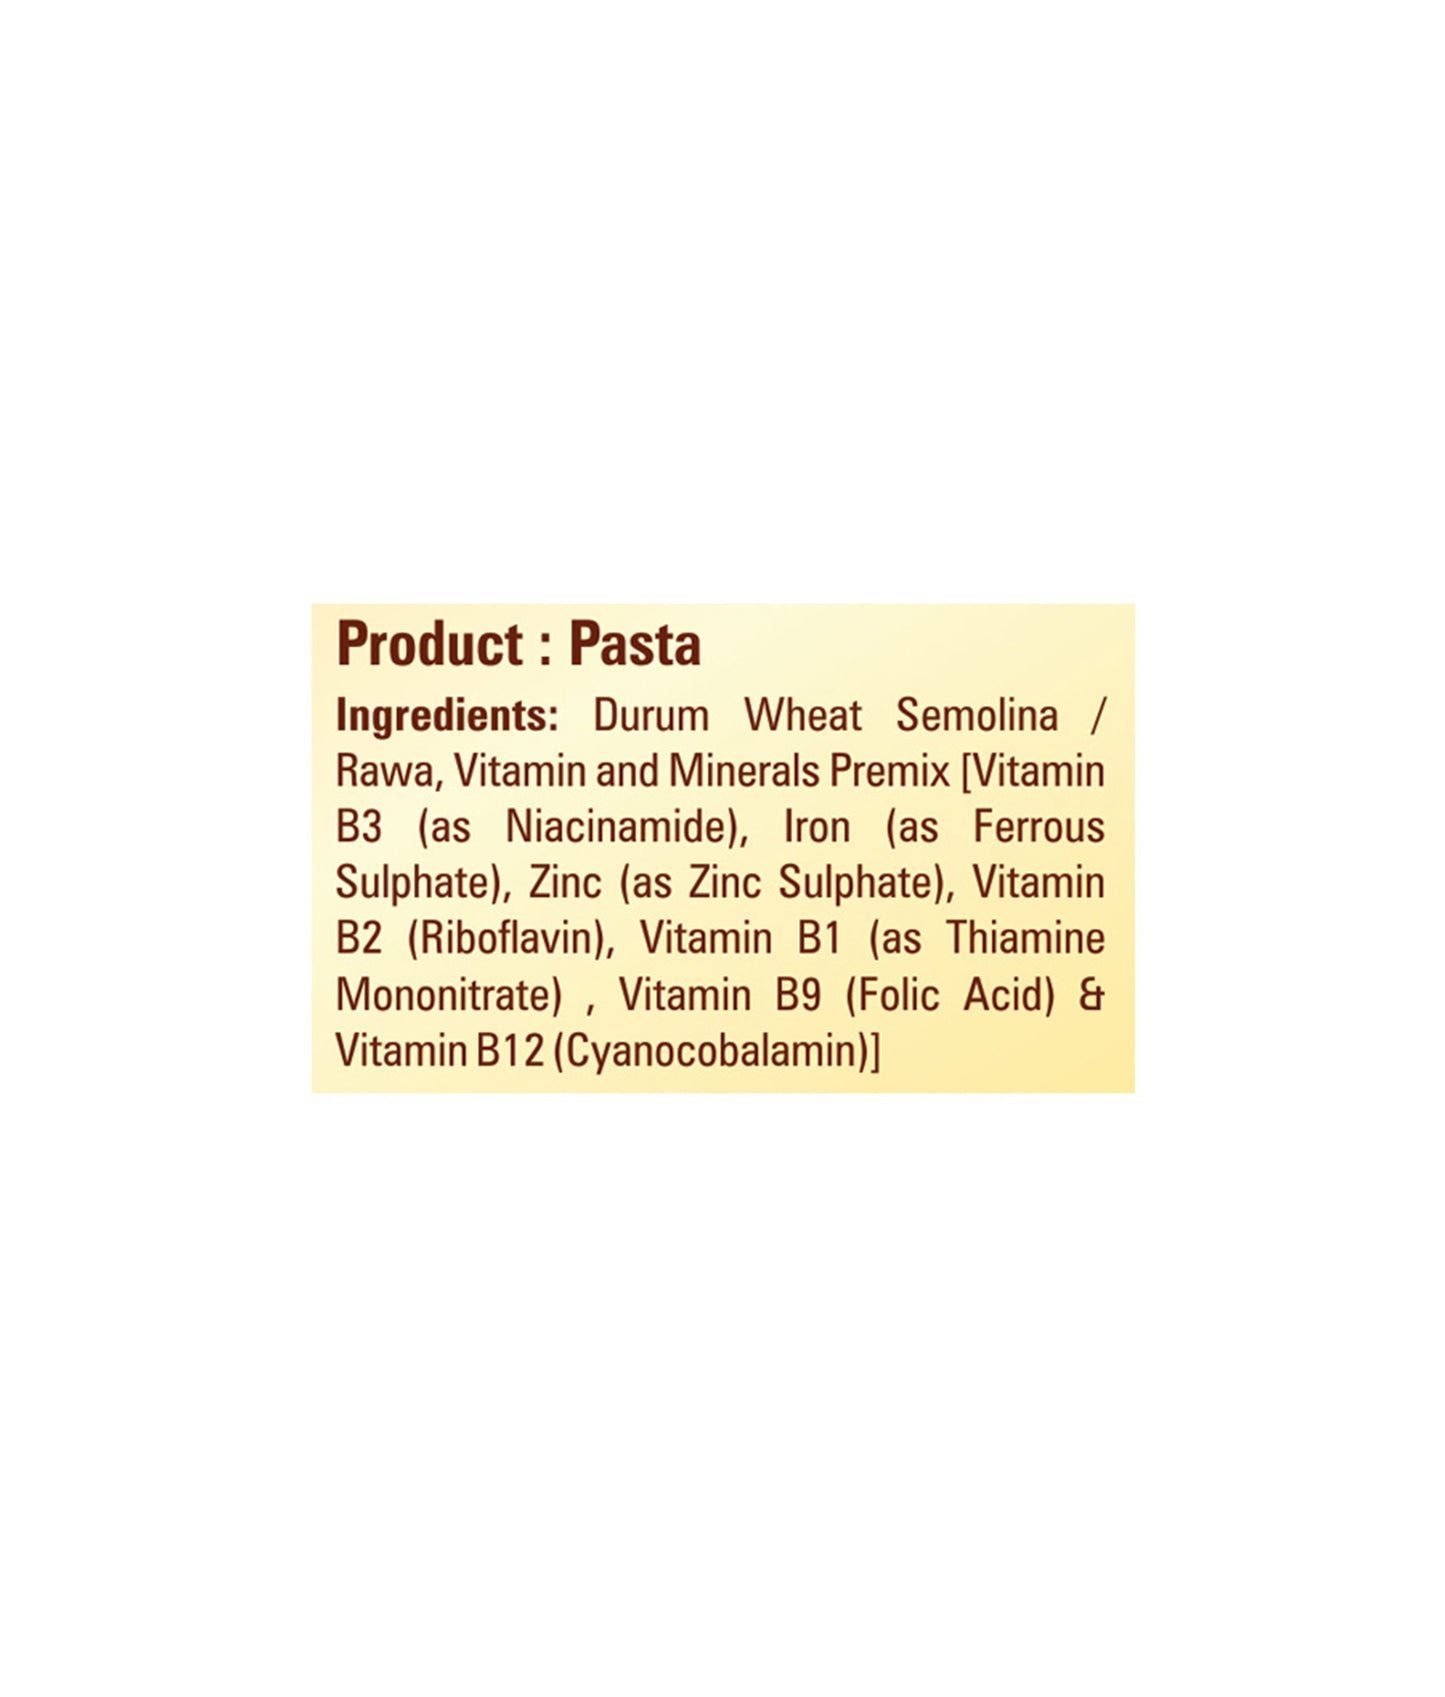 Bambino Nutraawell Premium Pasta (Spirali)